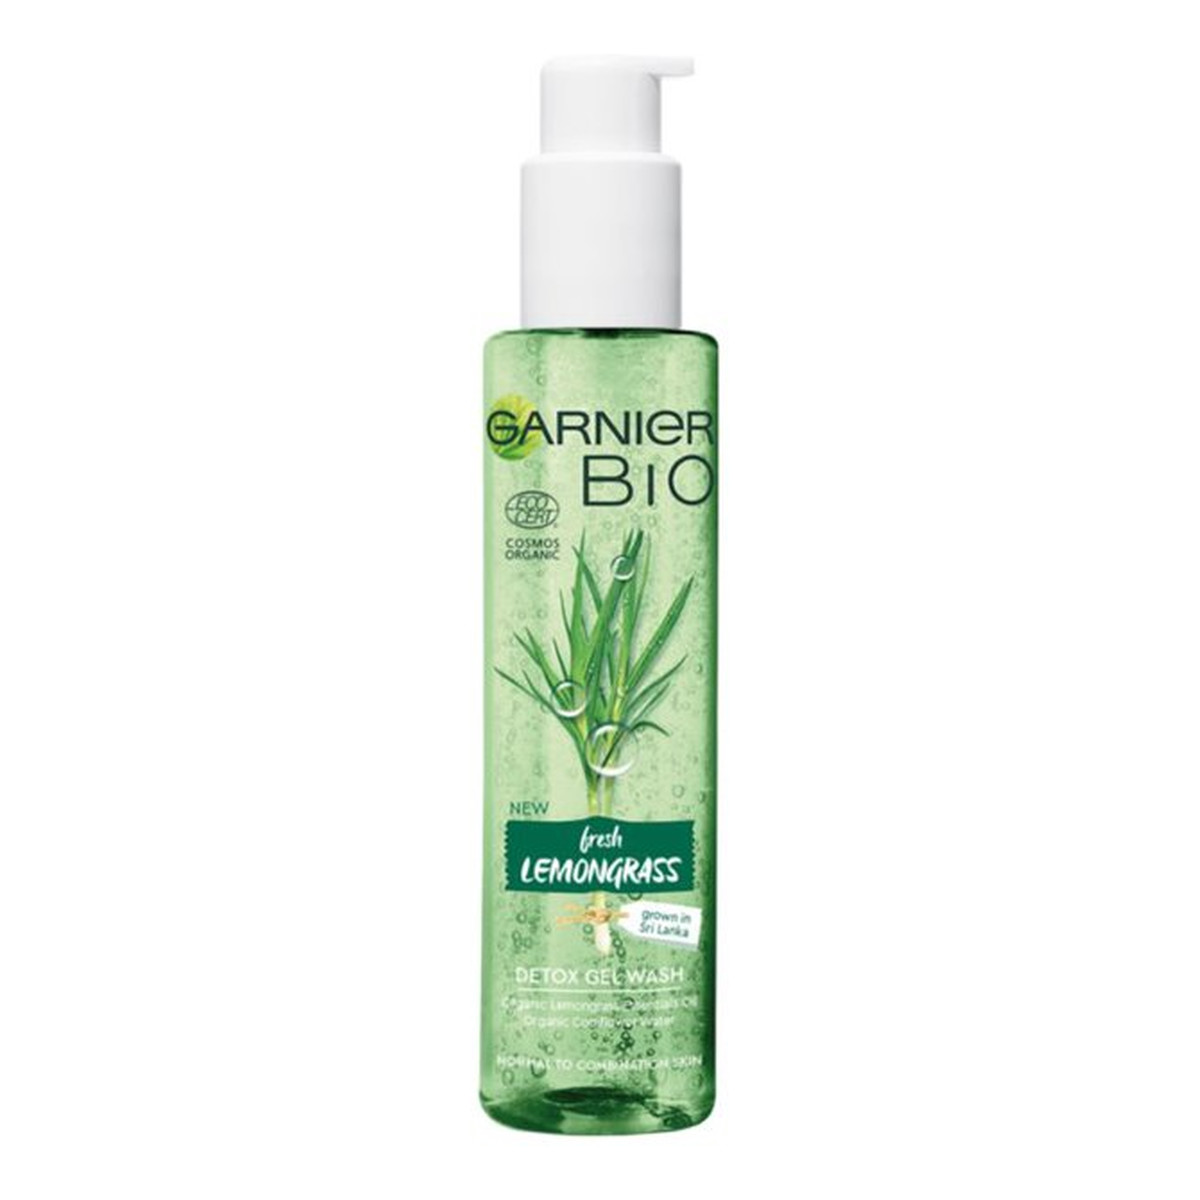 Garnier Bio Fresh Lemongrass Detox Wash Gel detoksykujący żel myjący do twarzy 150ml